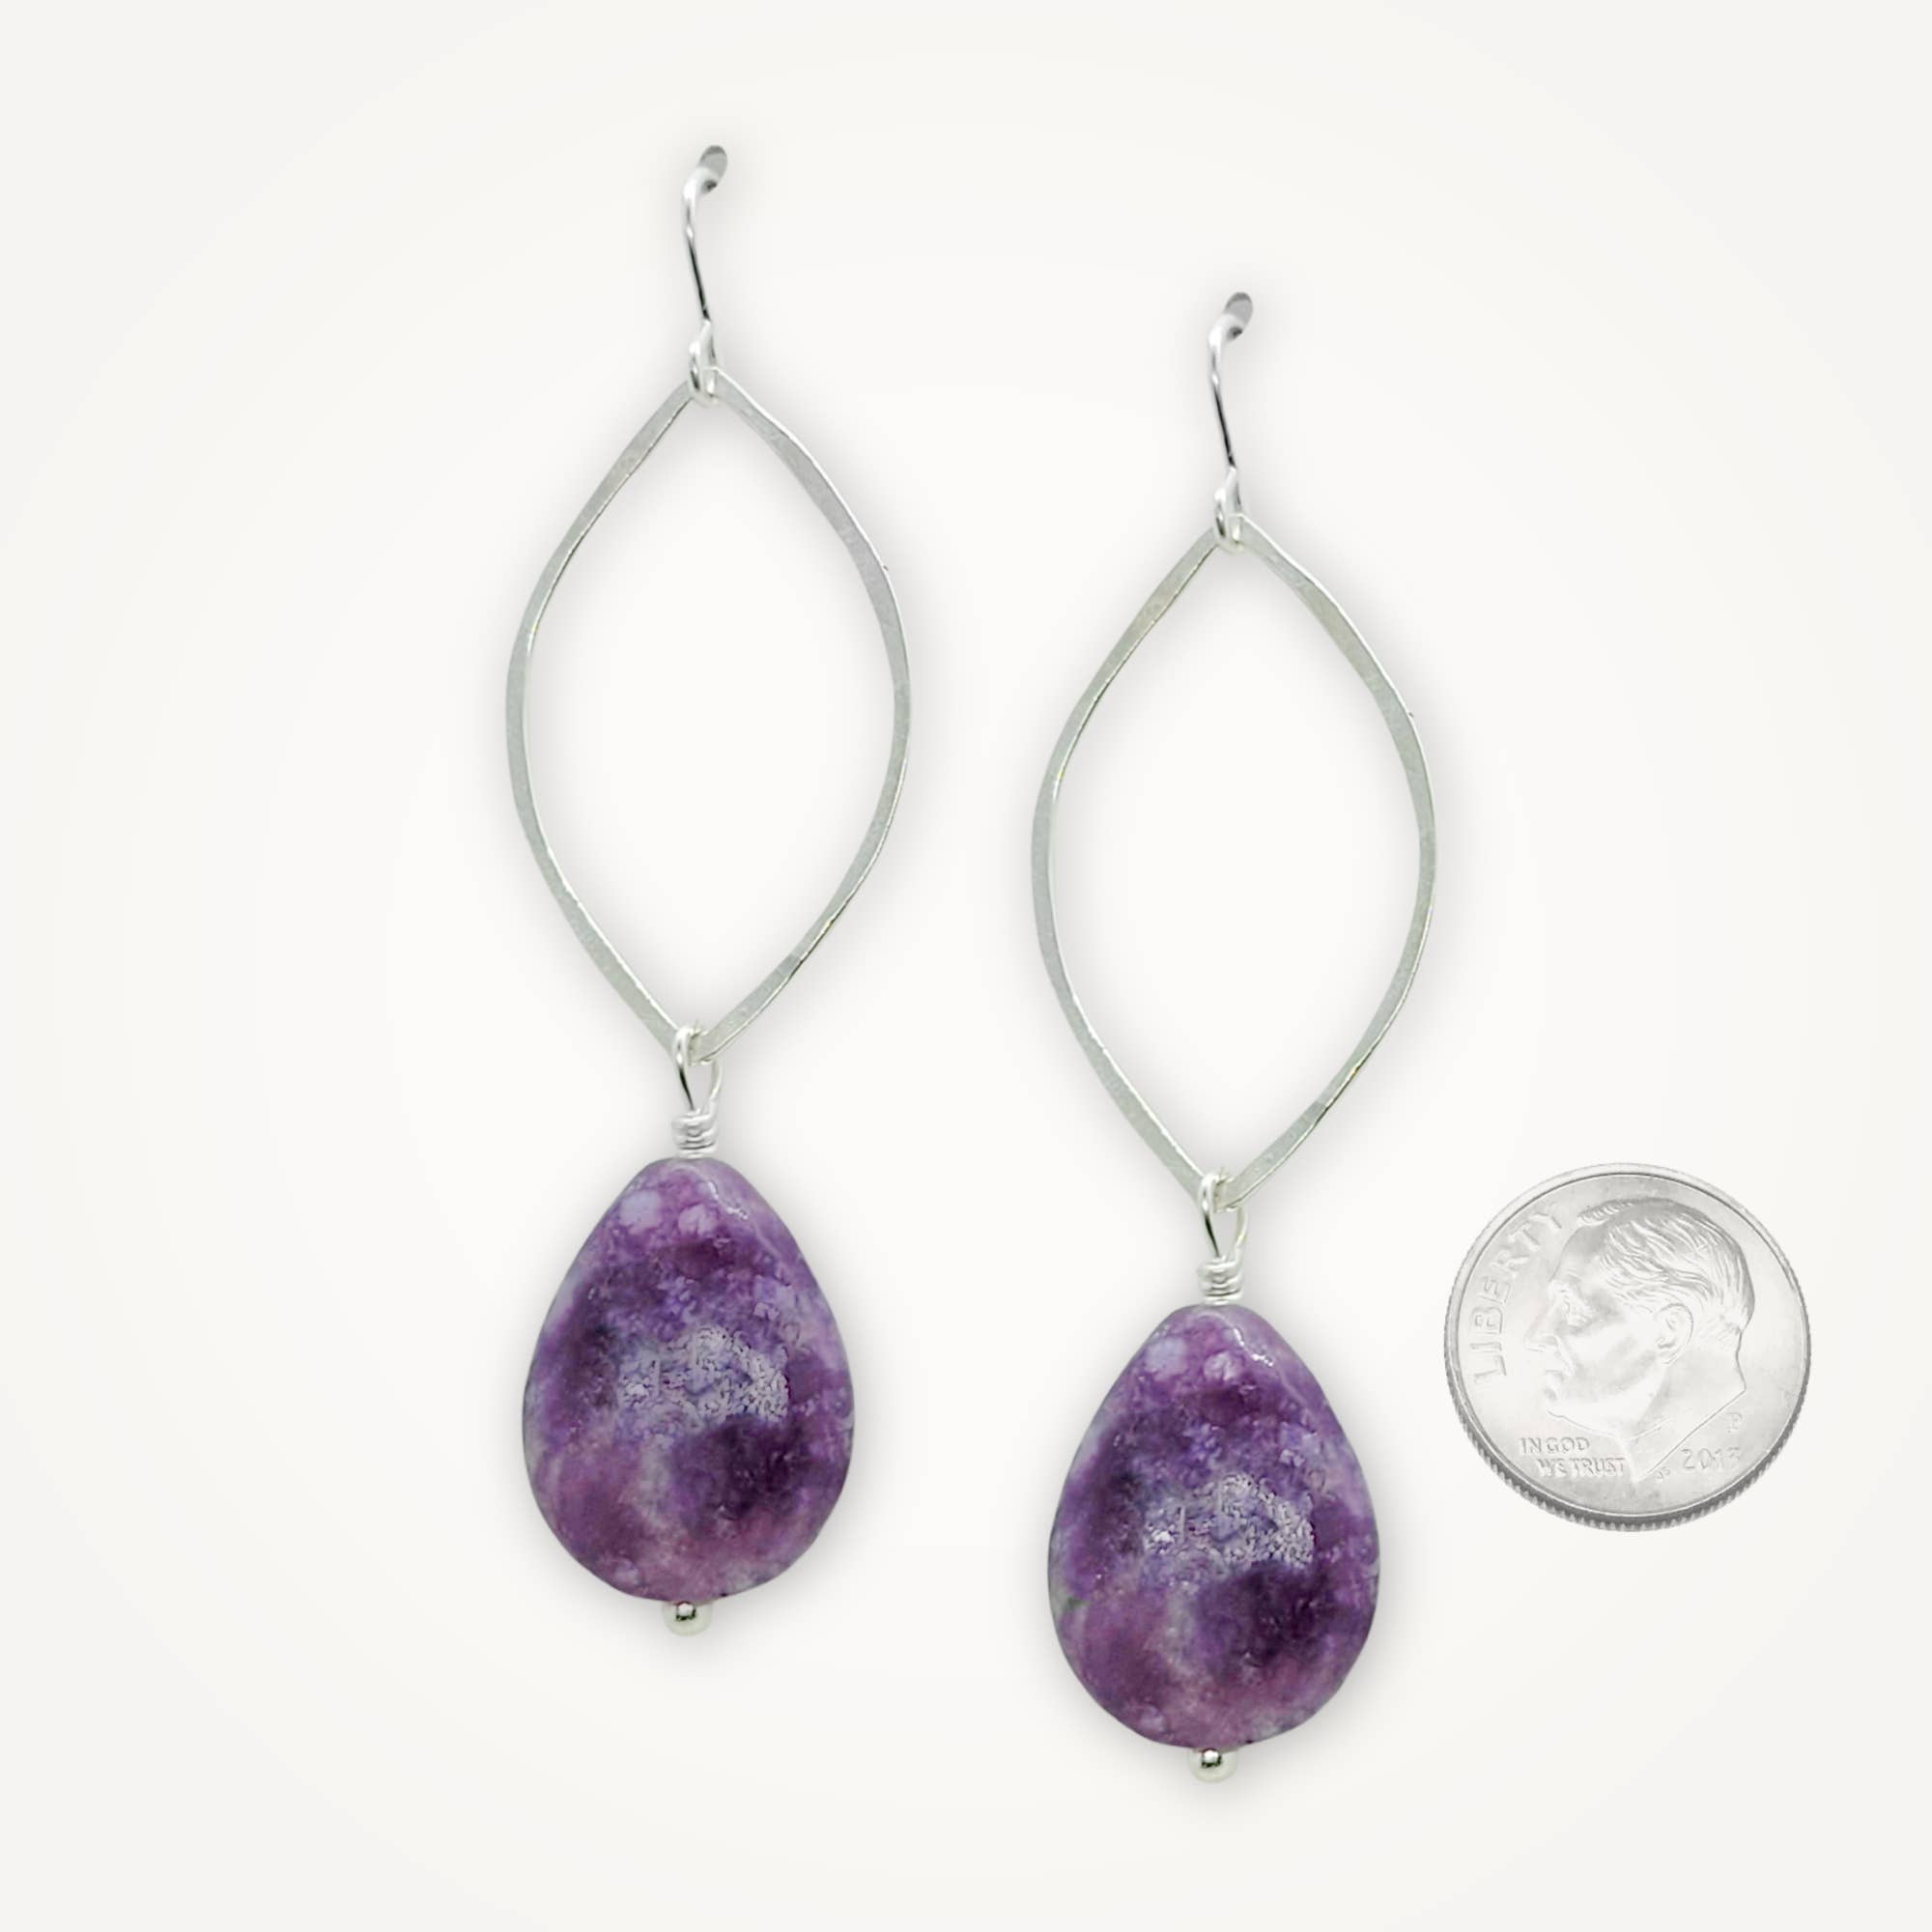 LUPIN Long Beaded Earrings Purple Flowers Danglers Handmade Jewelry